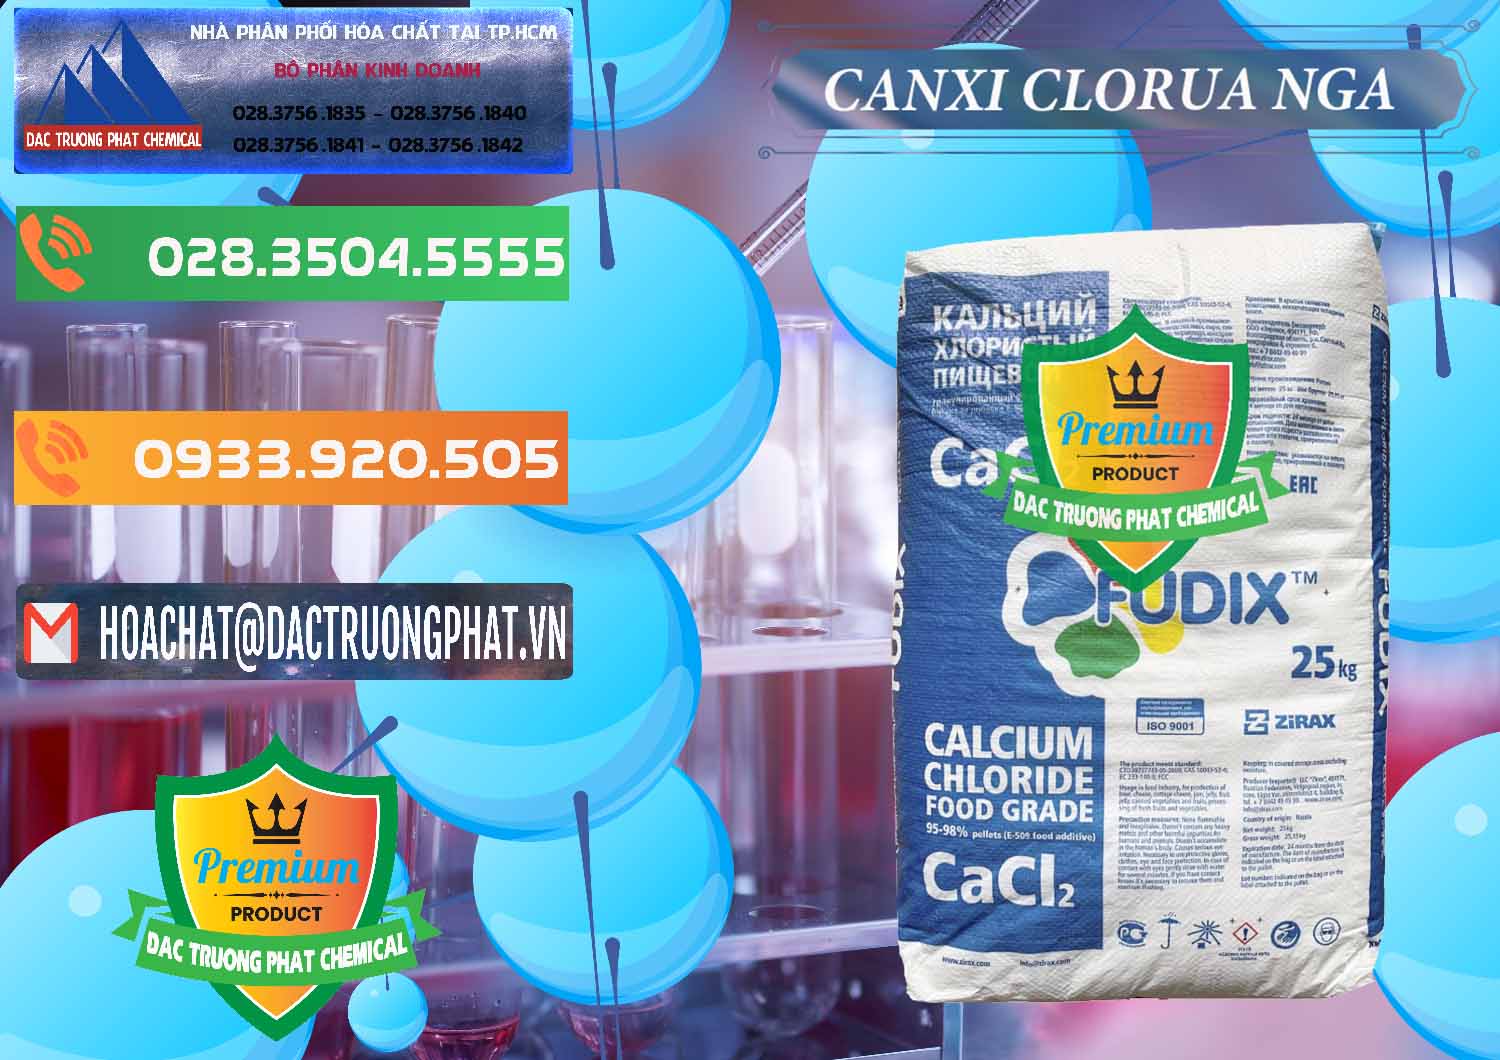 Cty chuyên cung ứng và bán CaCl2 – Canxi Clorua Nga Russia - 0430 - Nơi chuyên nhập khẩu & phân phối hóa chất tại TP.HCM - hoachatxulynuoc.com.vn